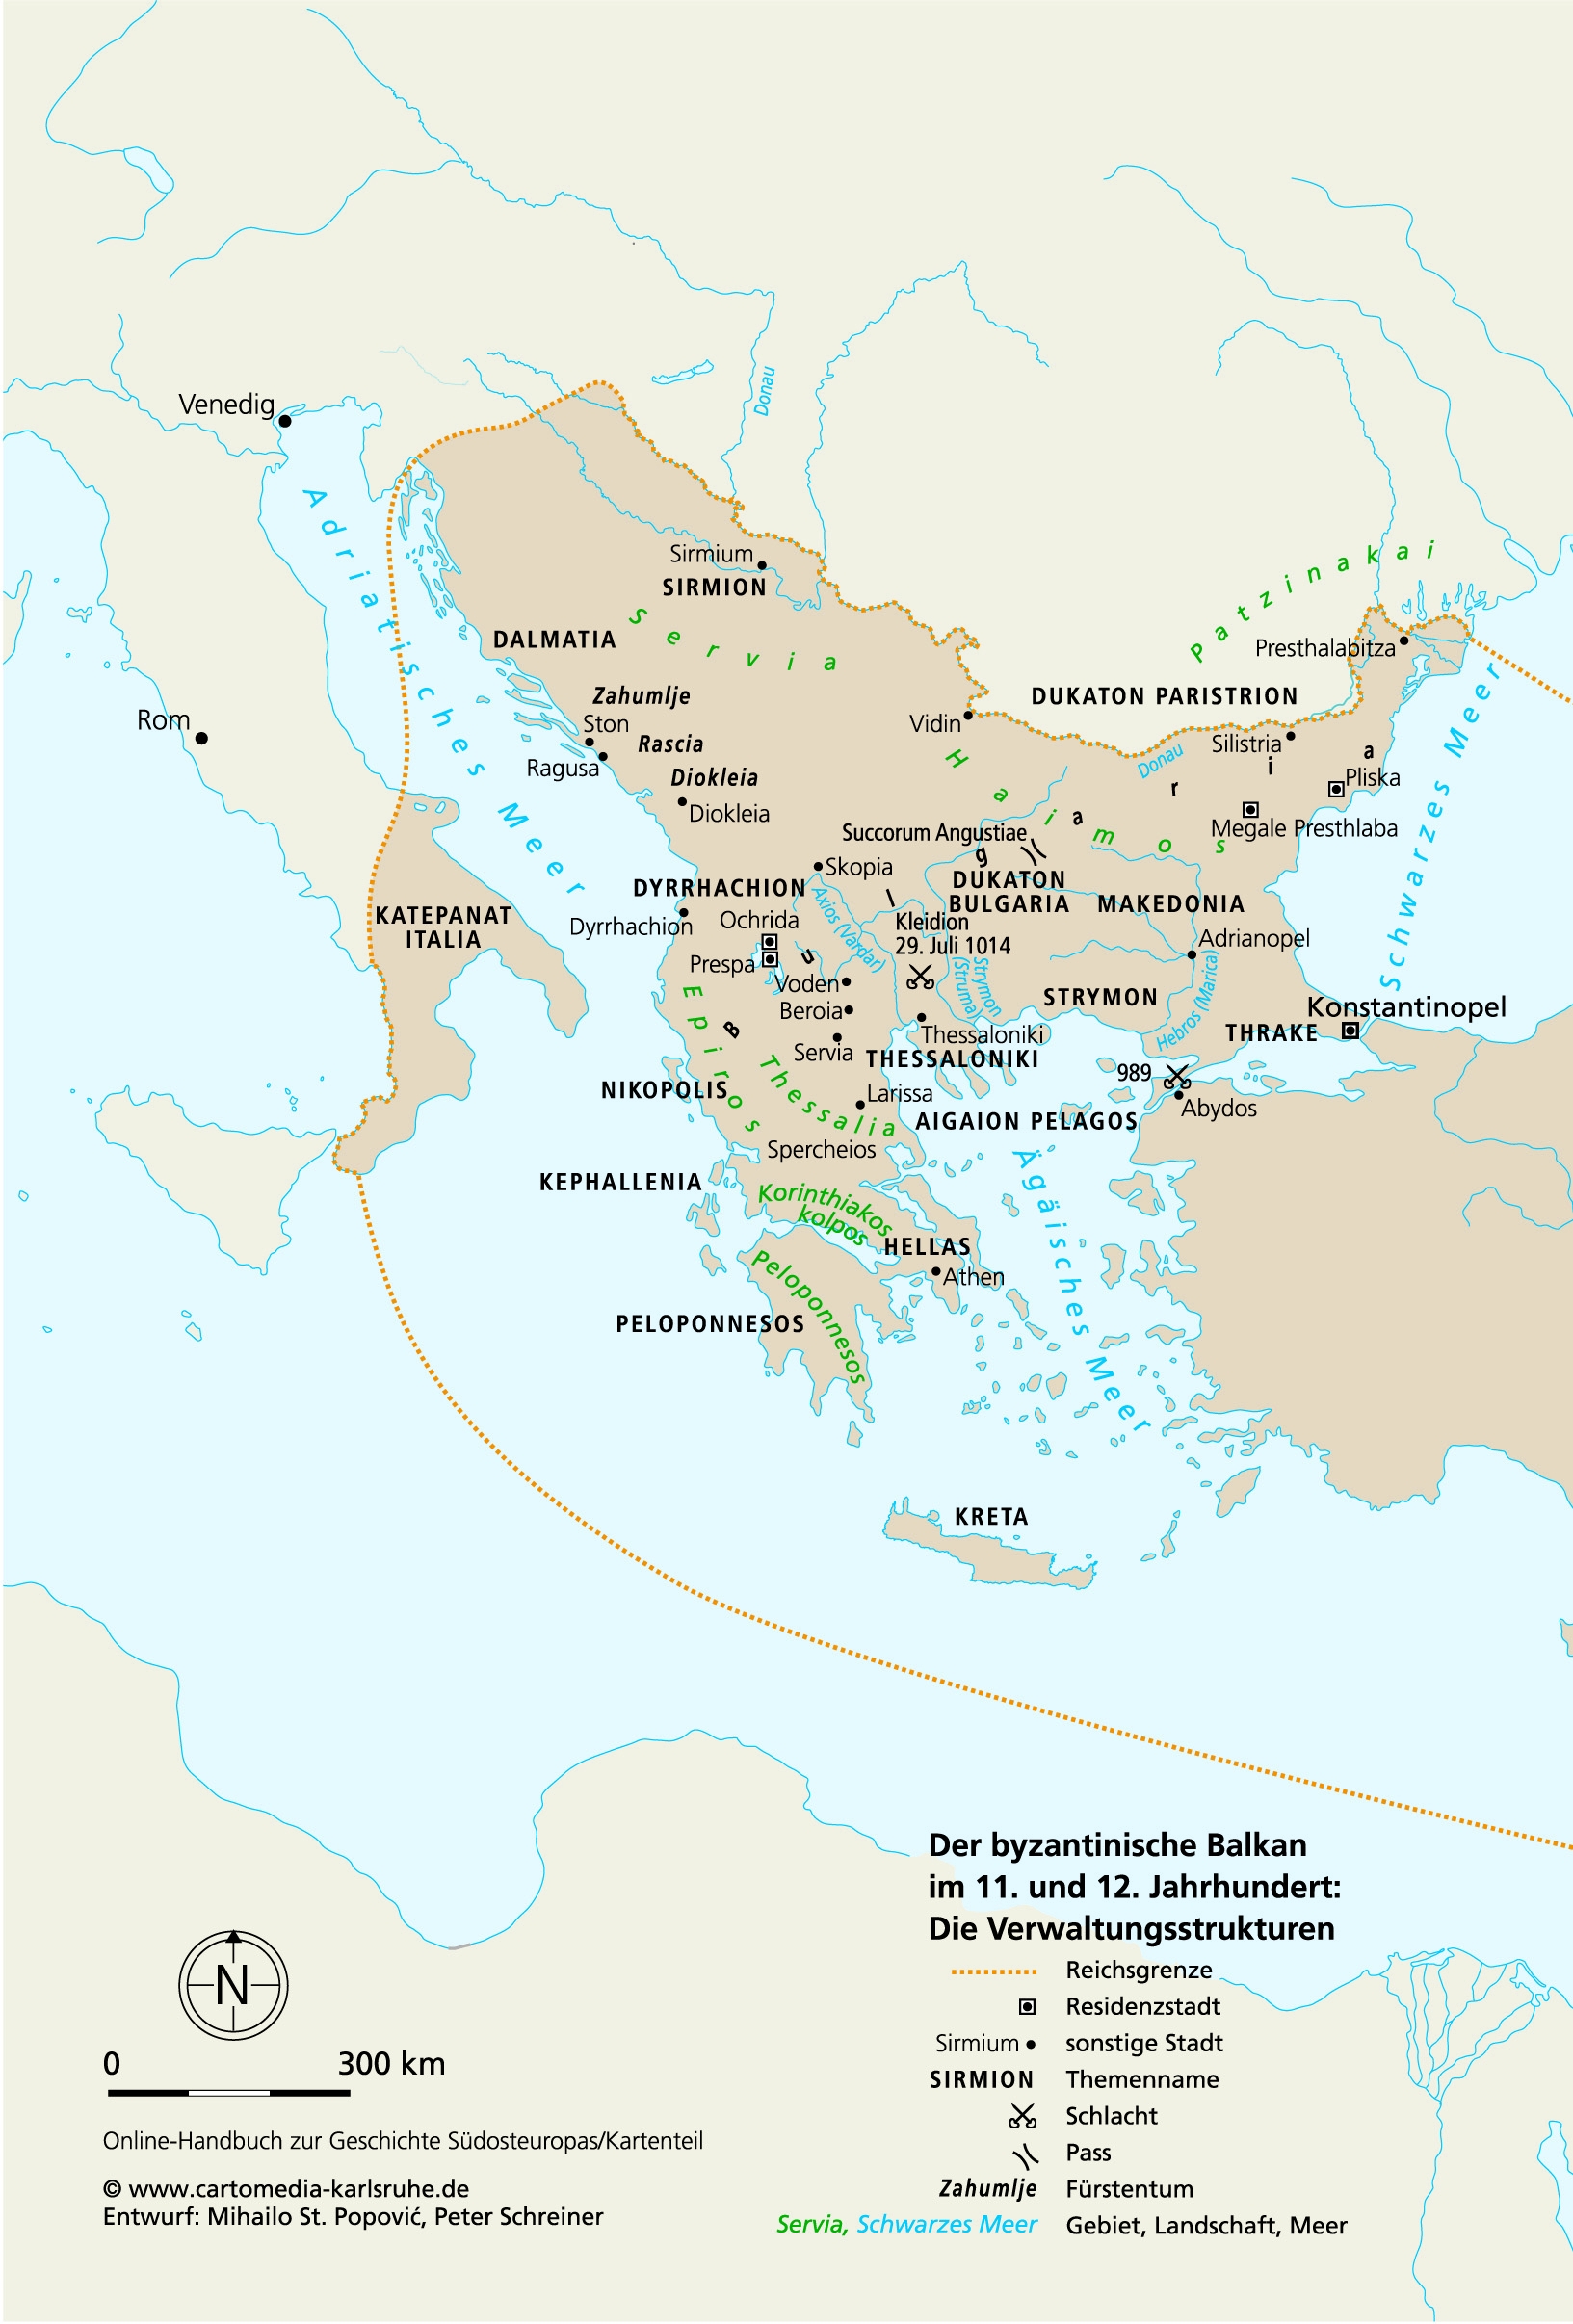 Der byzantinische Balkan im 11. und 12. Jahrhundert: Die Verwaltungsstrukturen